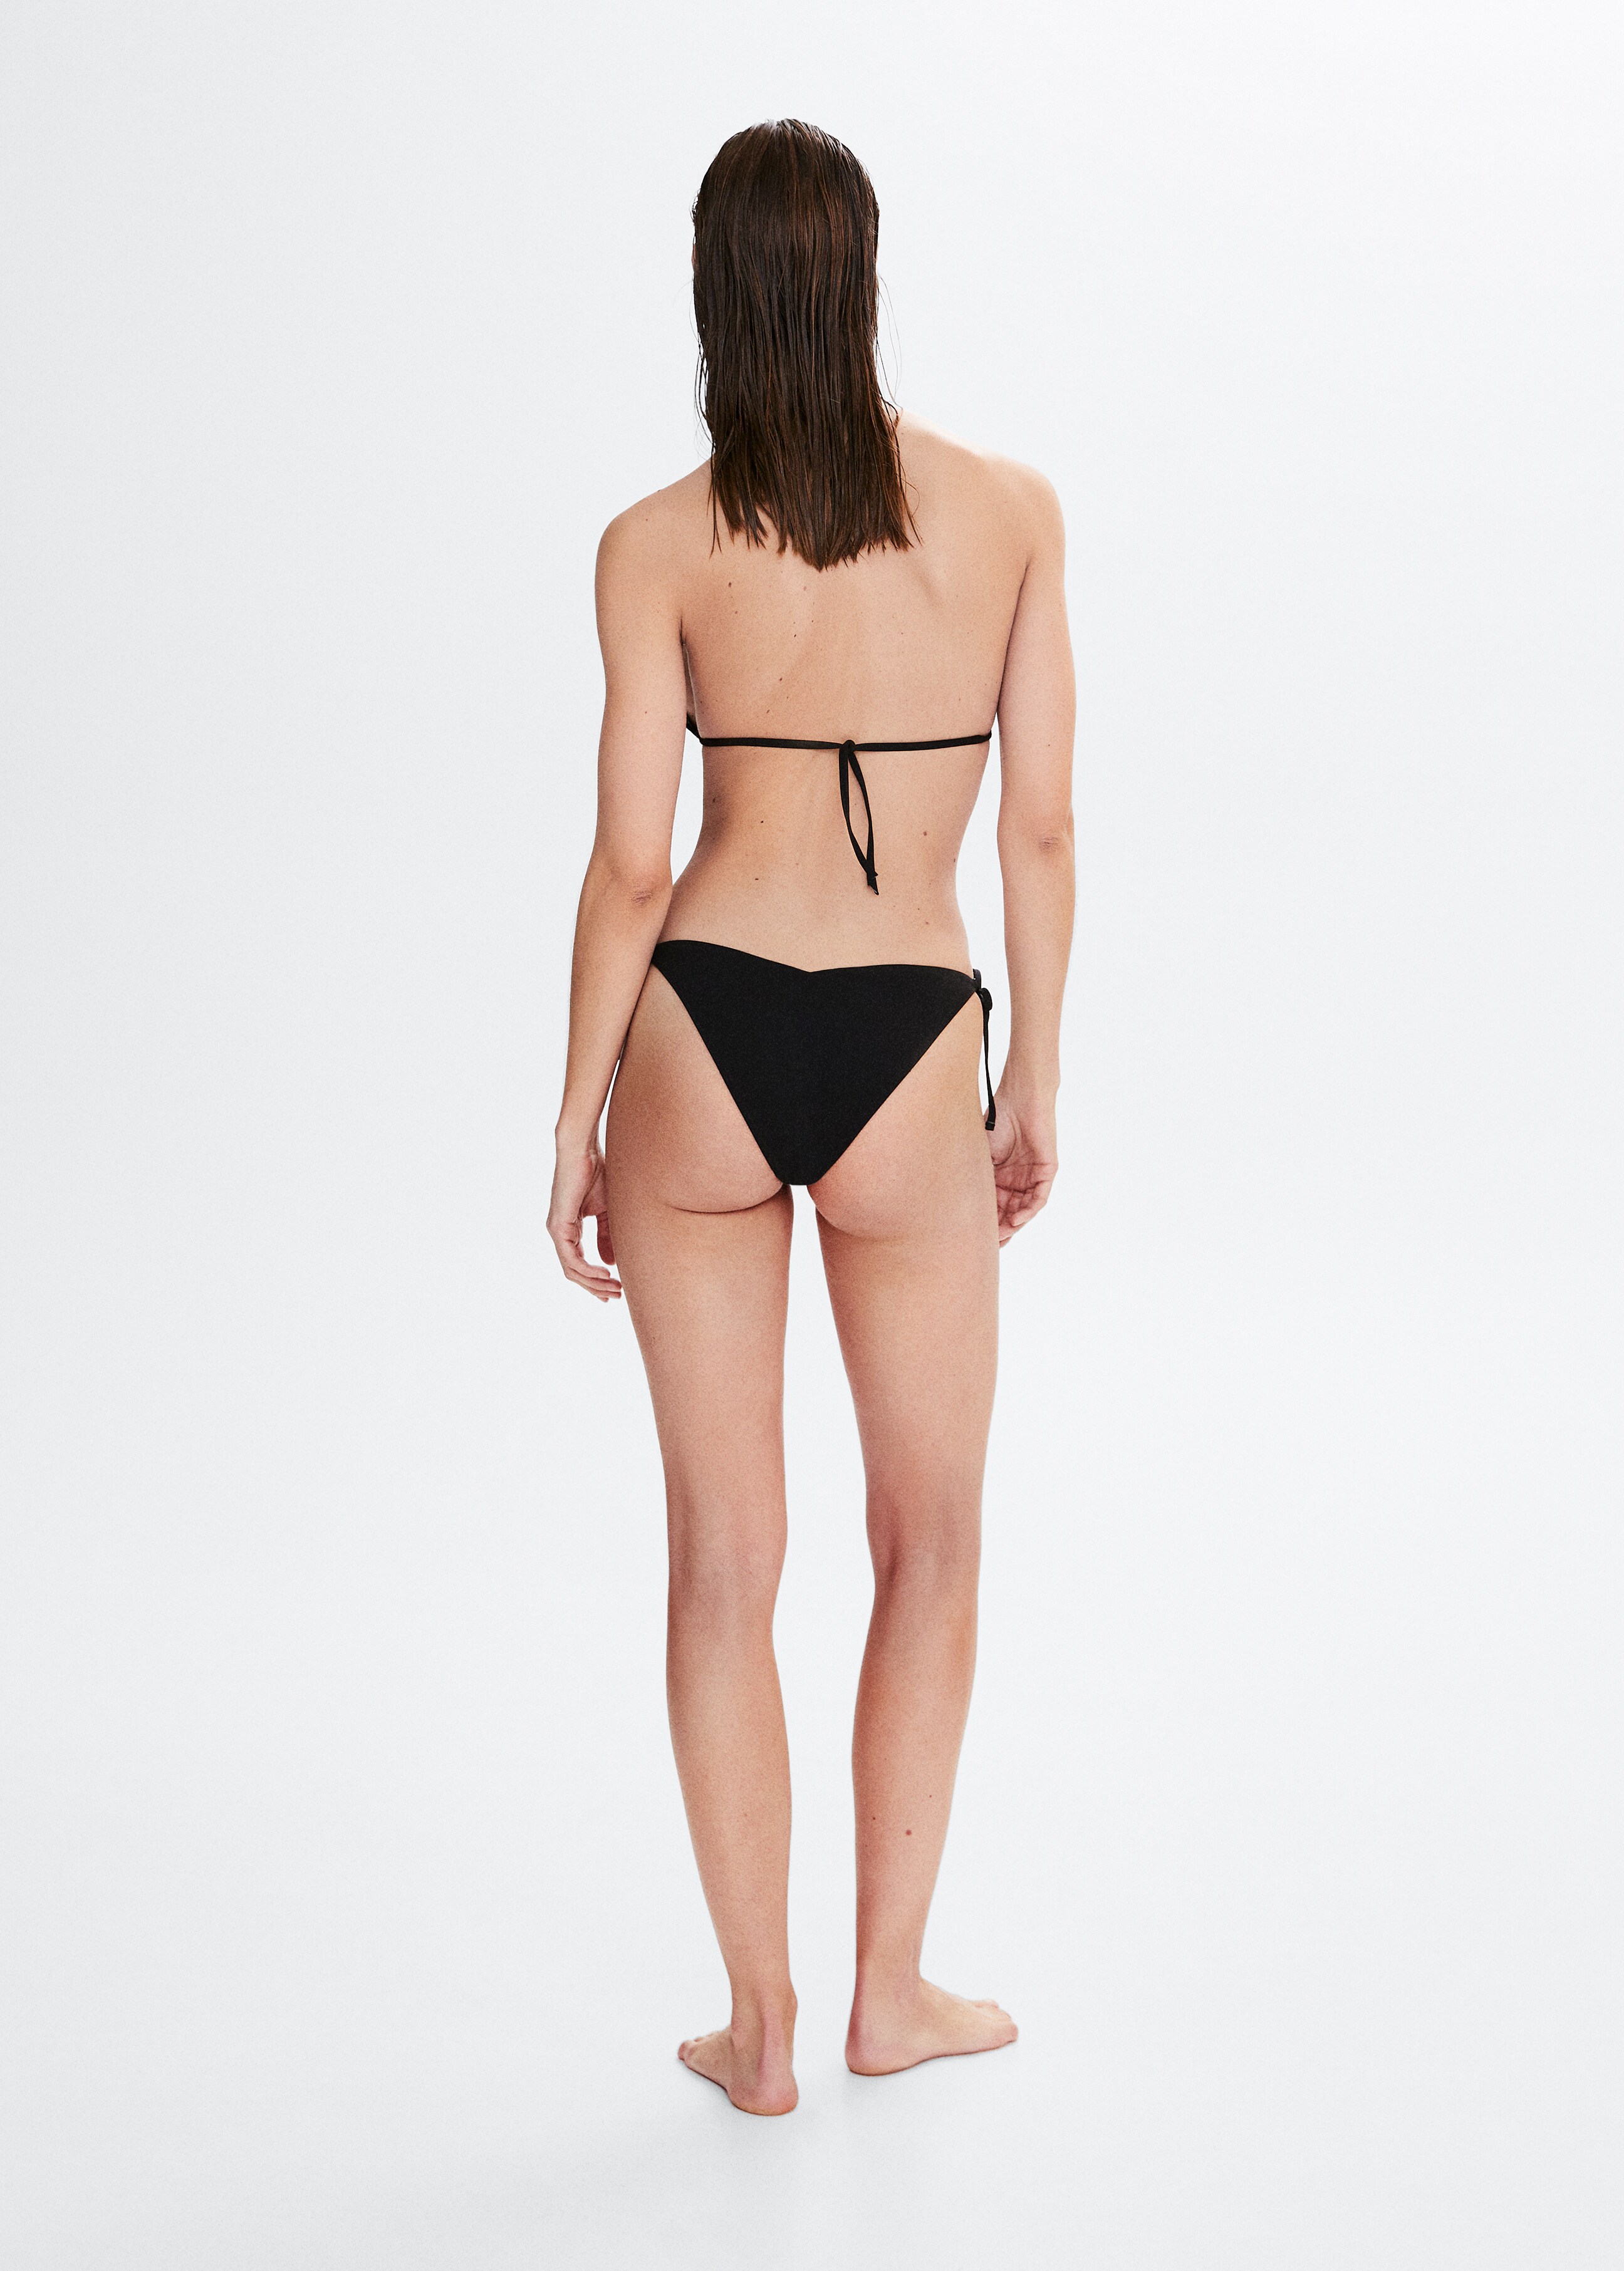 Klassischer Bikini-Slip mit Schleifen - Rückseite des Artikels